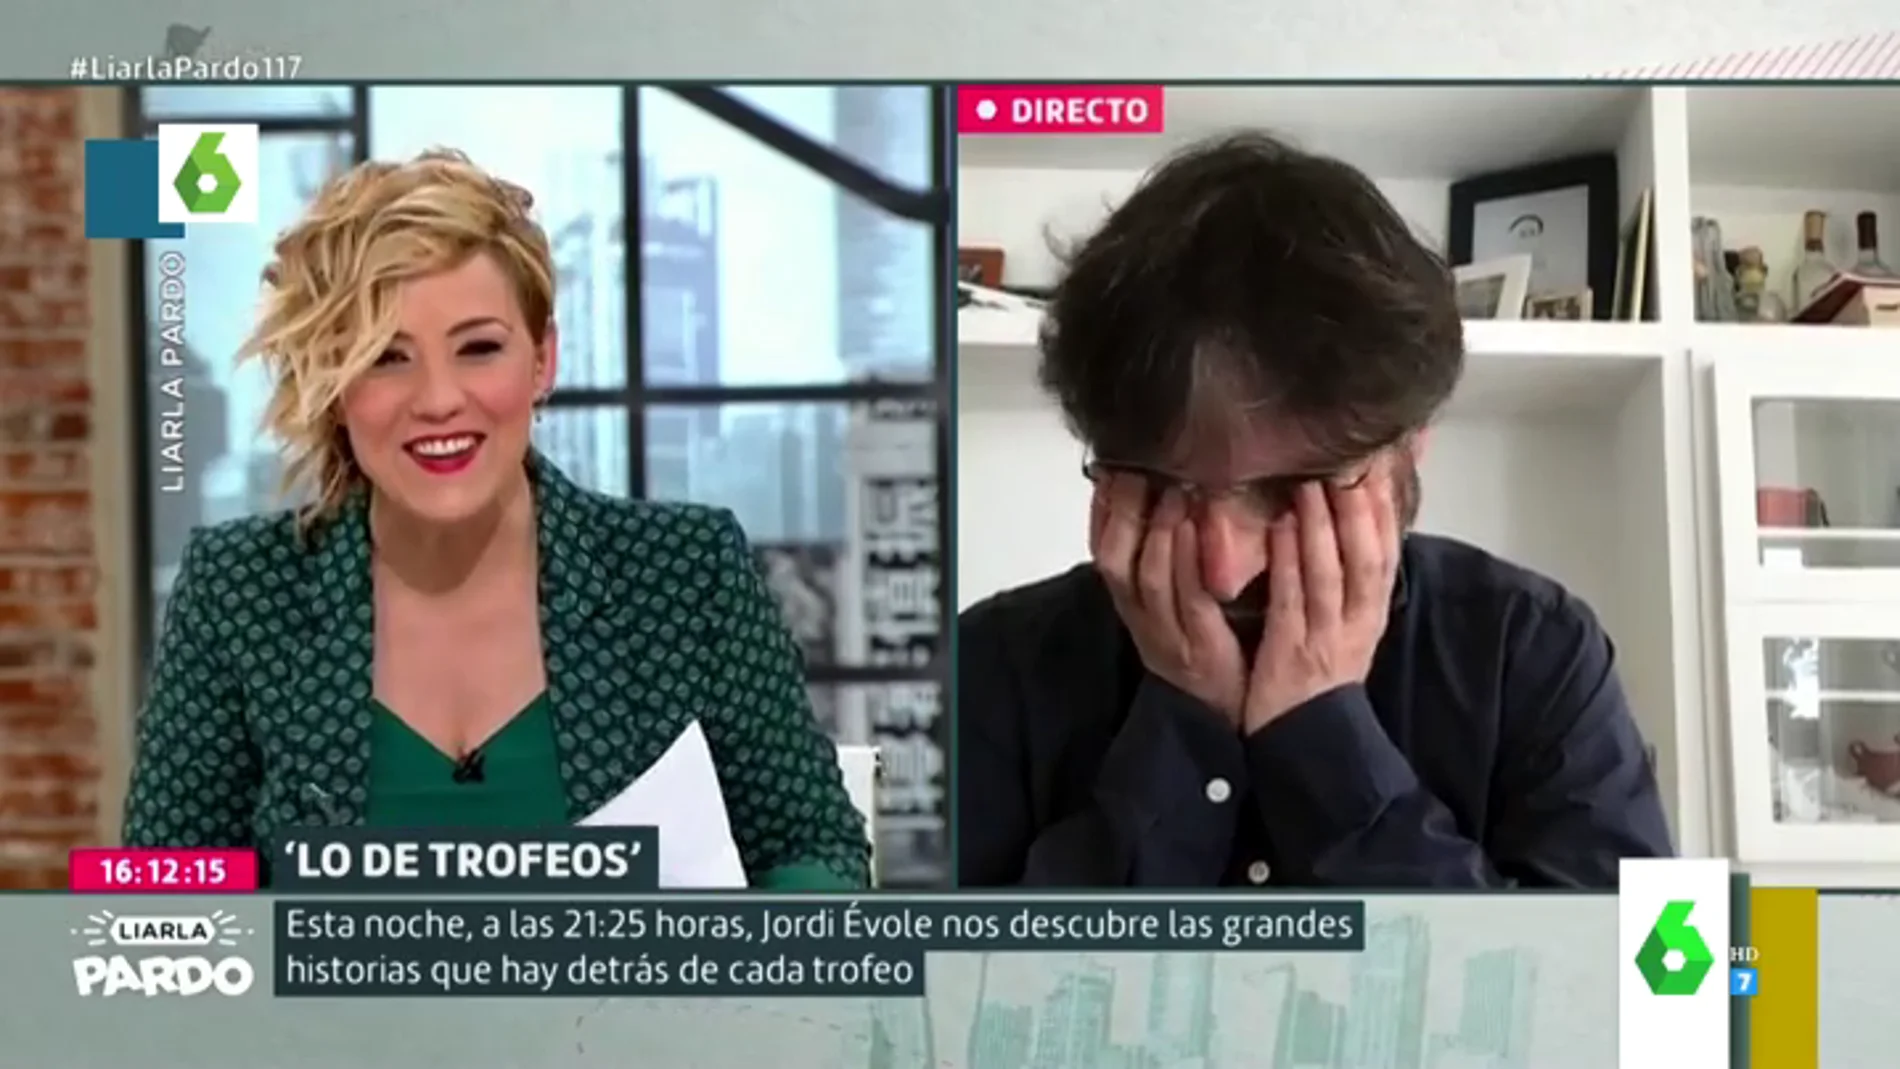 El divertido descuido de Jordi Évole con la bragueta en pleno directo que obliga a Cristina Pardo a avisarle entre risas